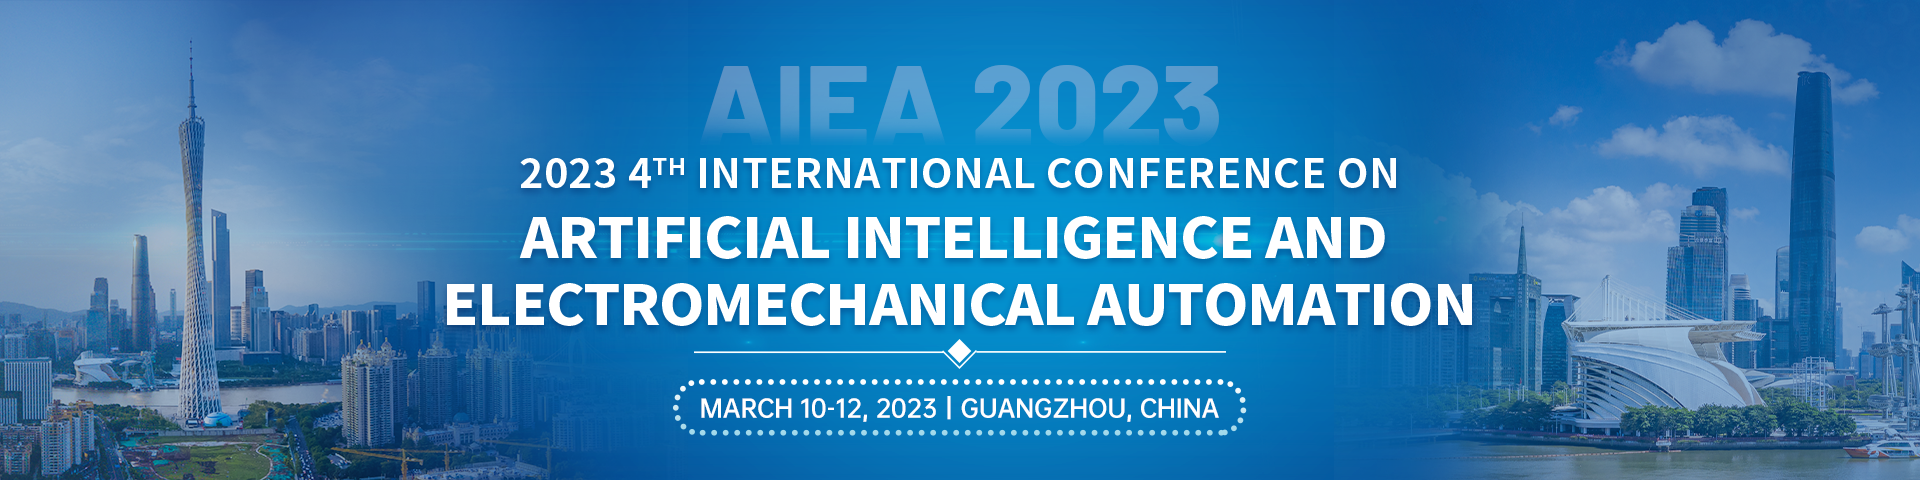 03月-广州站-AIEA 2023-会议官网英文banner-20221012.png